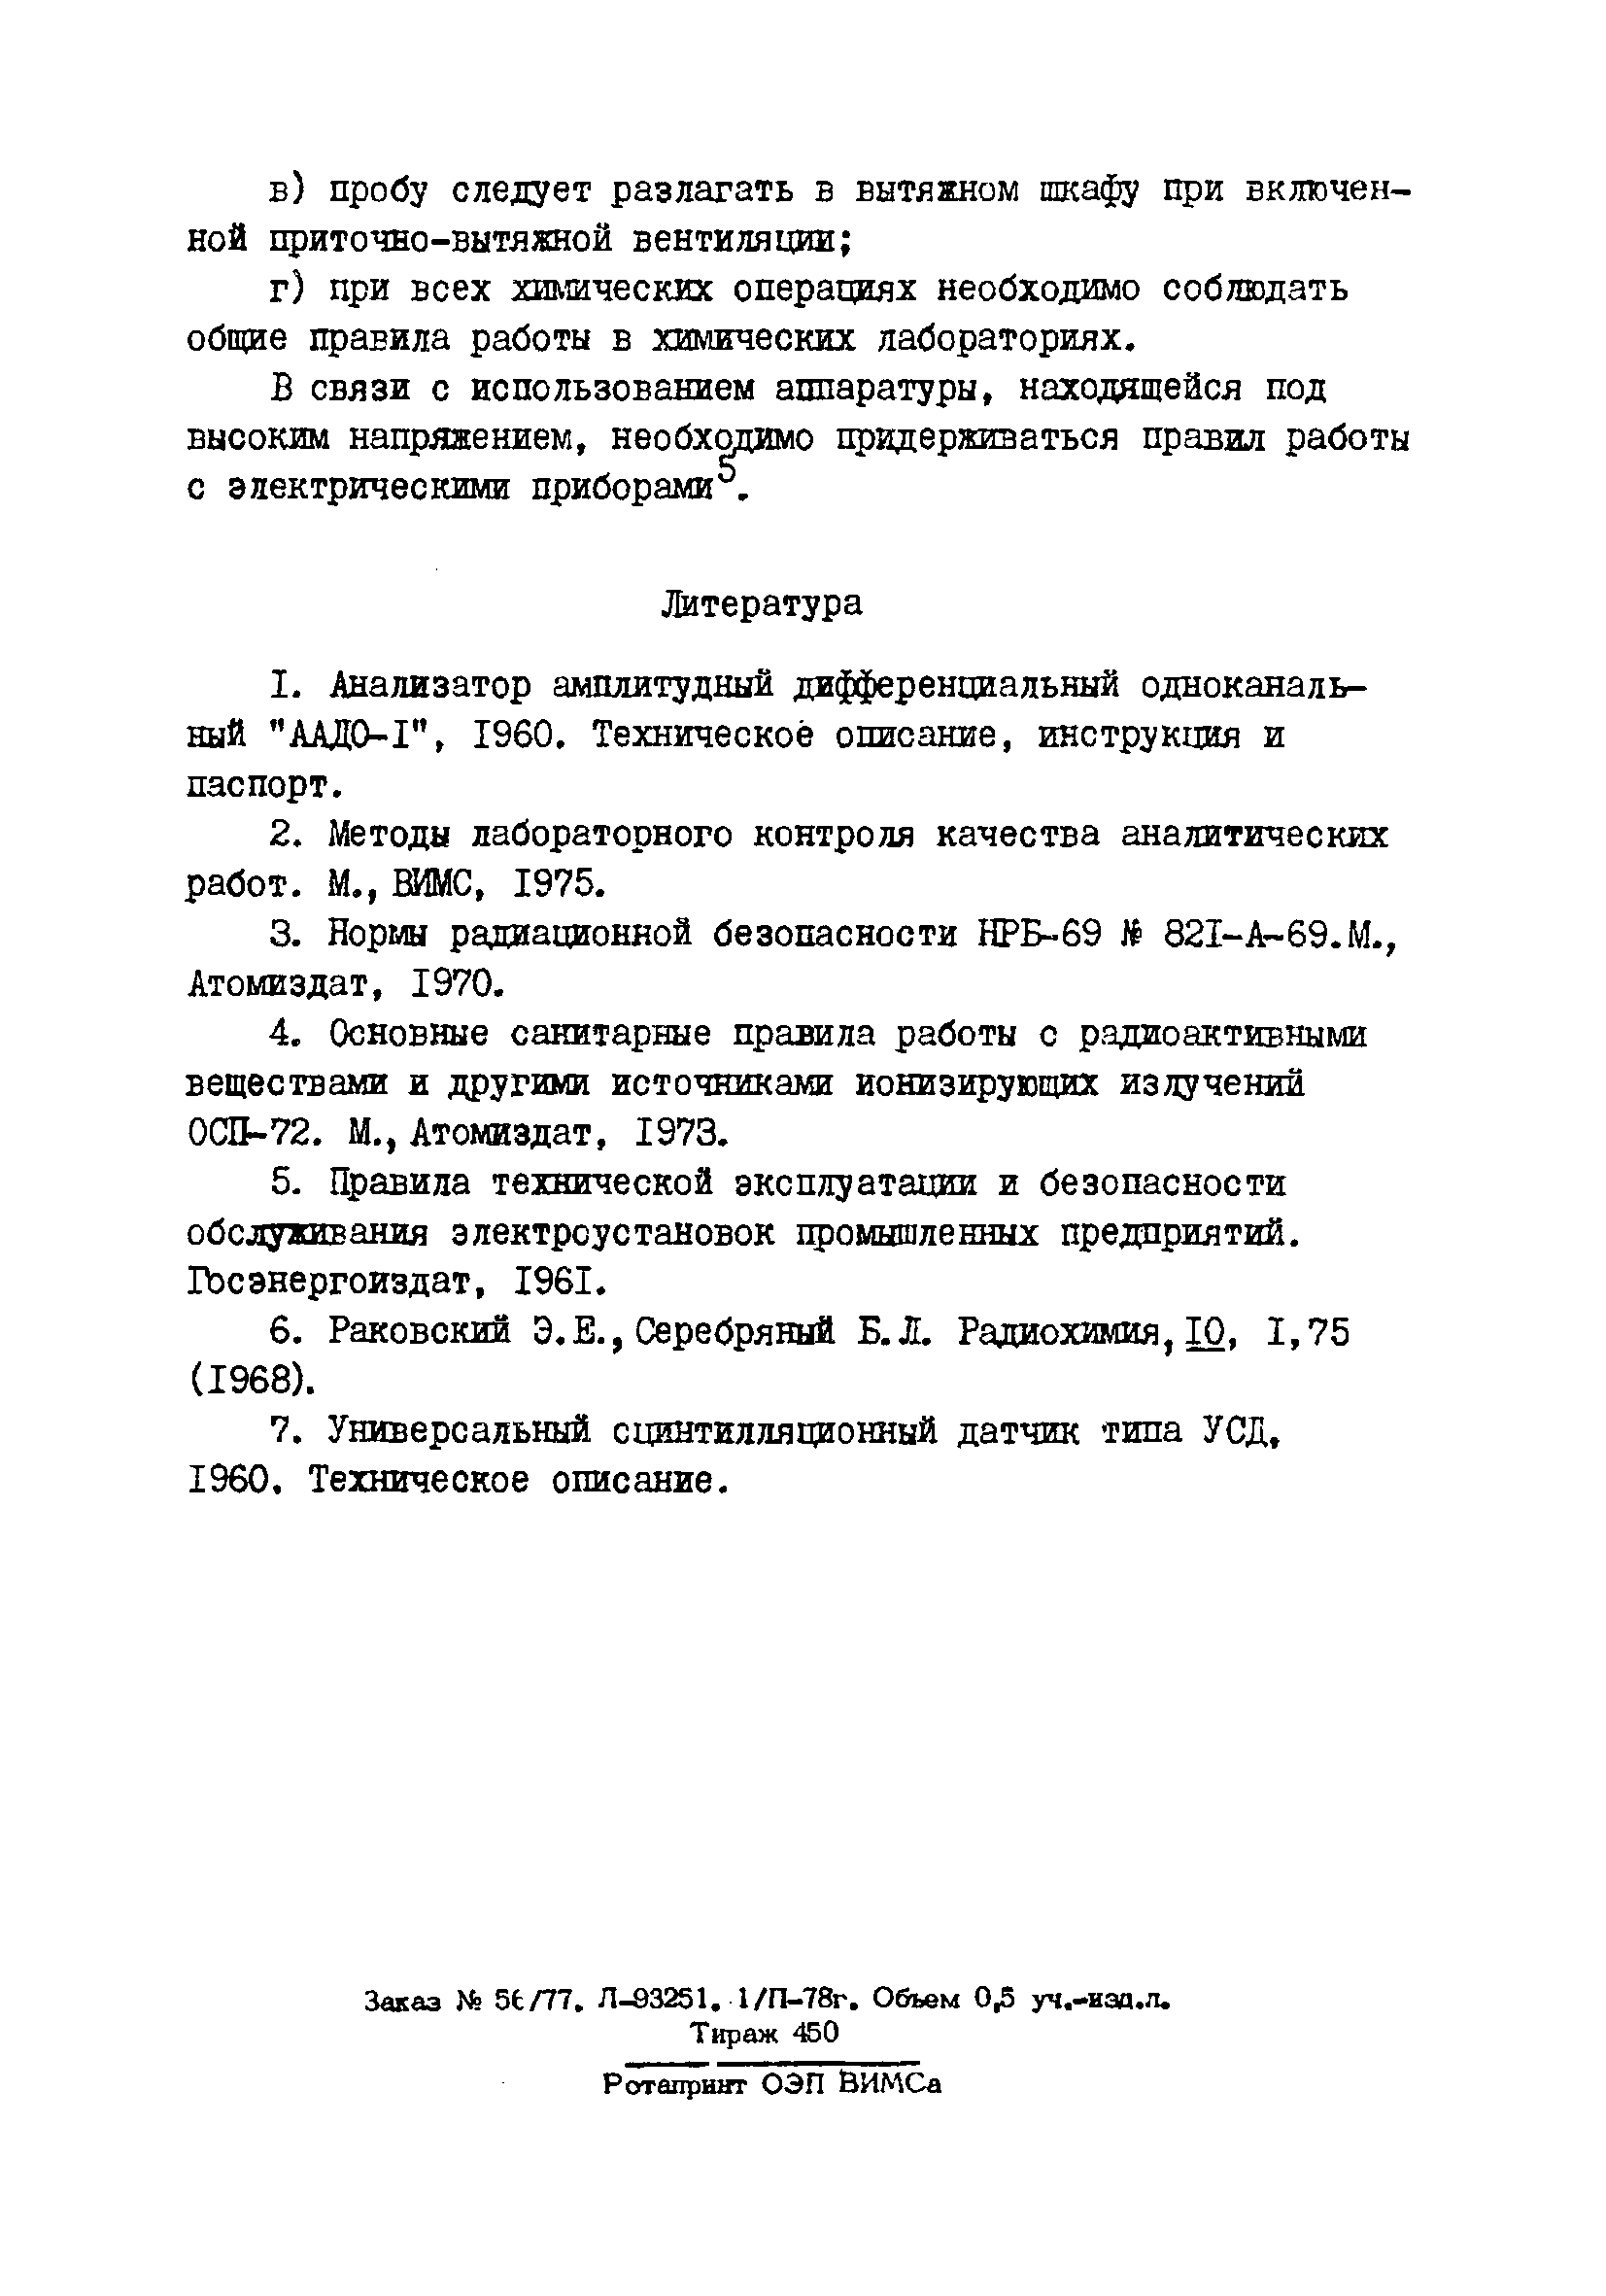 Инструкция НСАМ 151-ЯФ